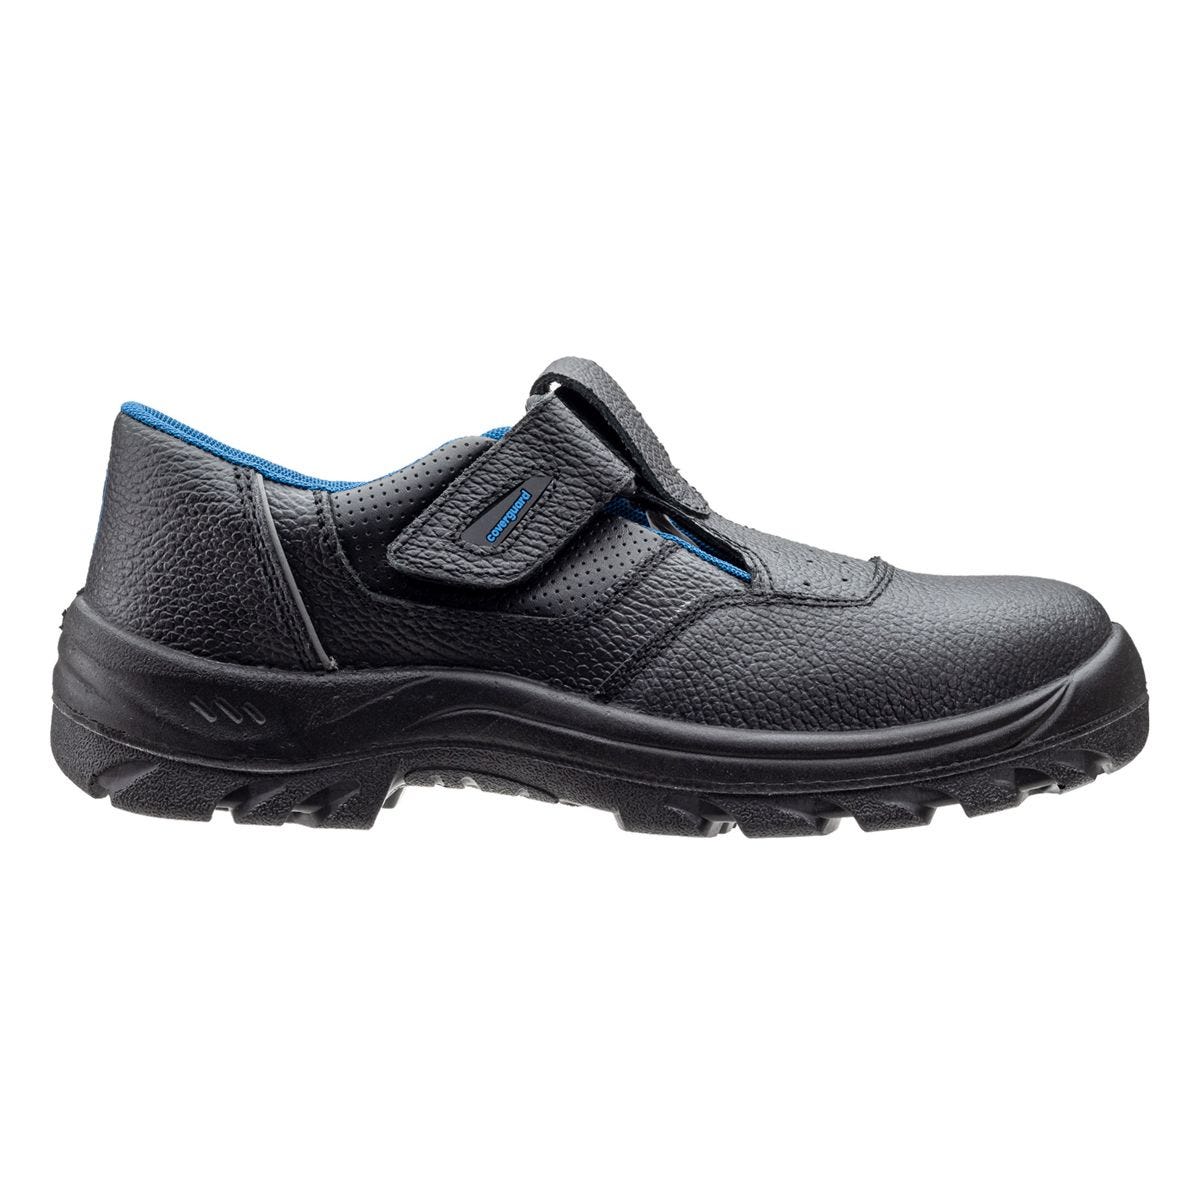 Sandales de sécurité basses Bosco II noir - Coverguard - Taille 40 1